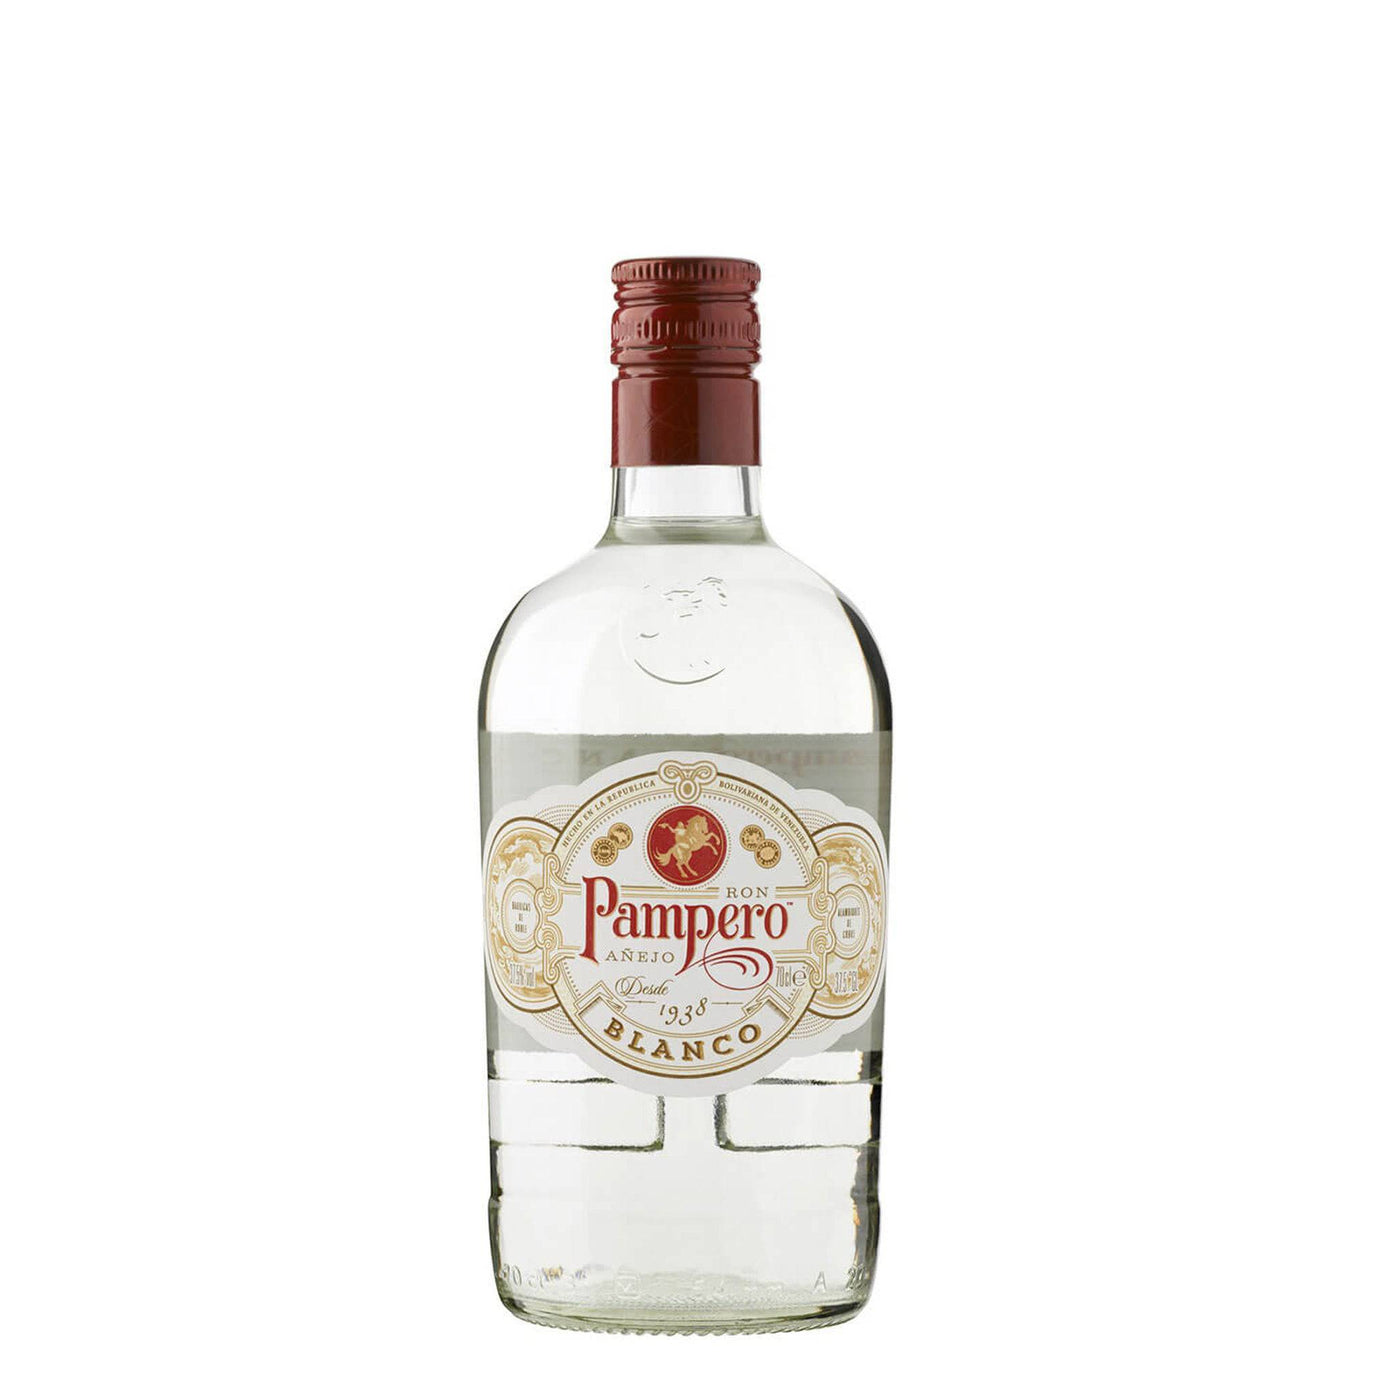 Pampero Blanco Rum - Spiritly